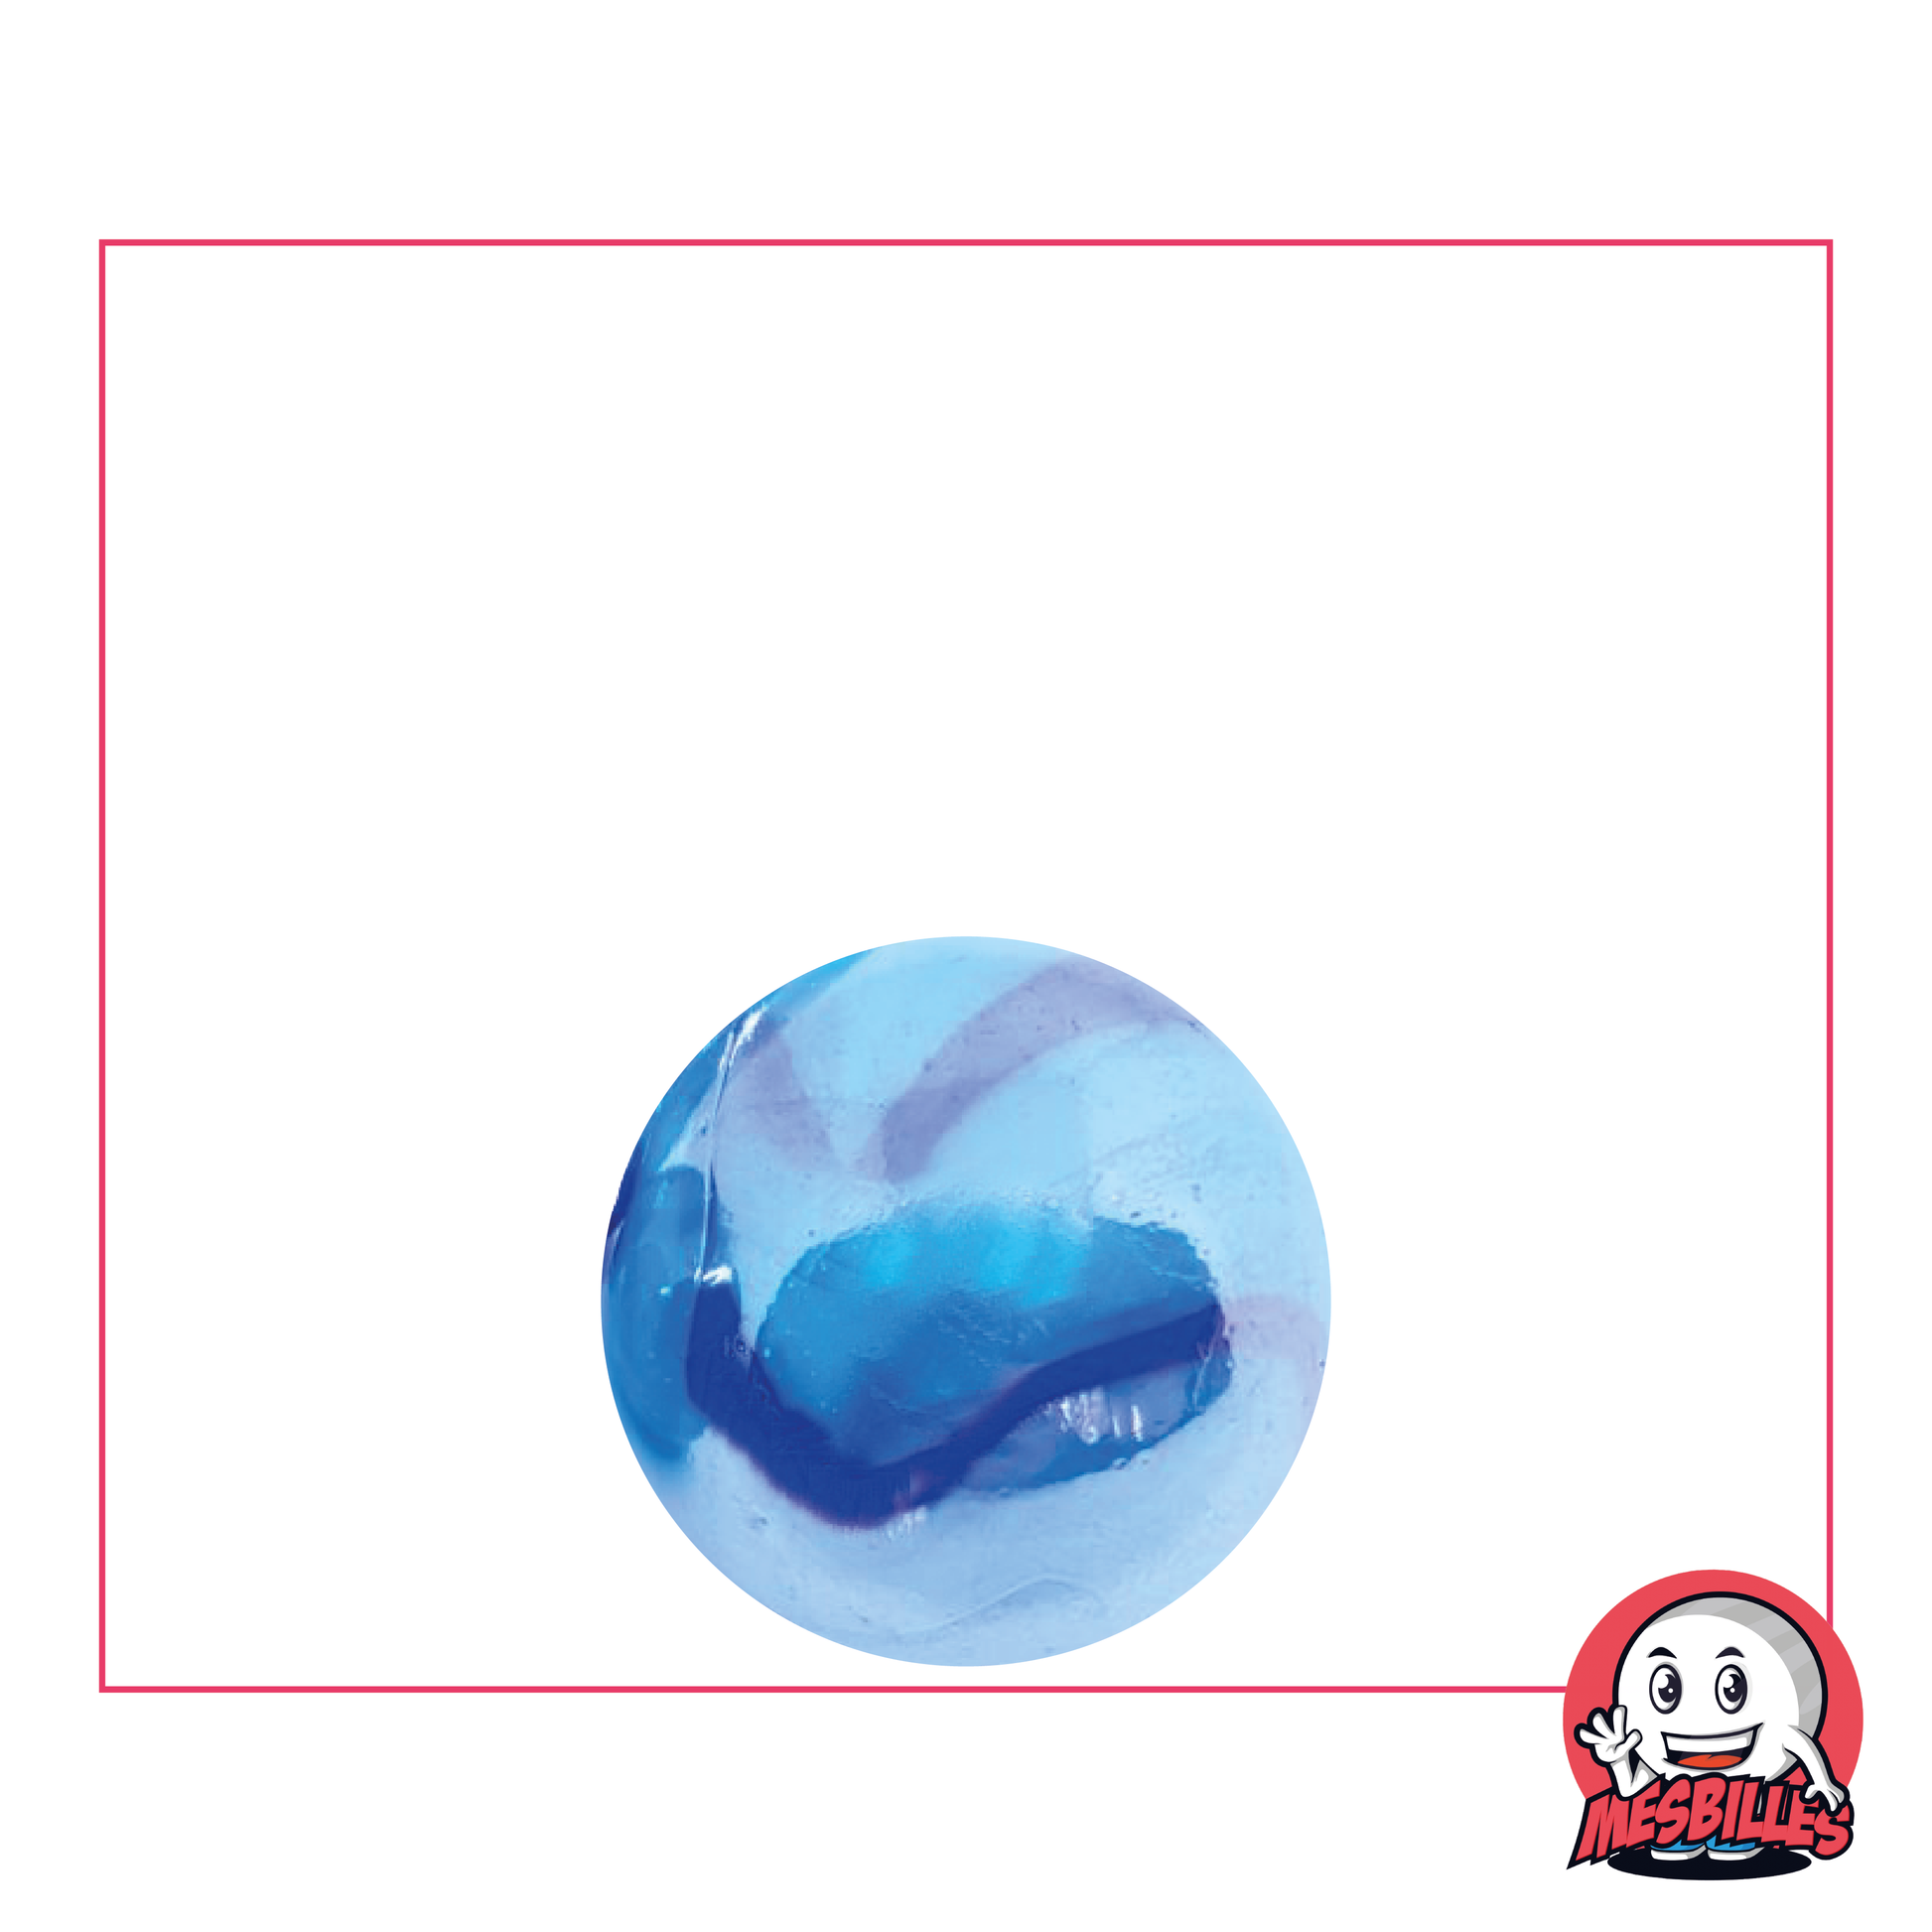 Bille Bleu de Chine, bille en verre ronde de 16 mm, Bille brillante opaque bleu clair et bleu foncé